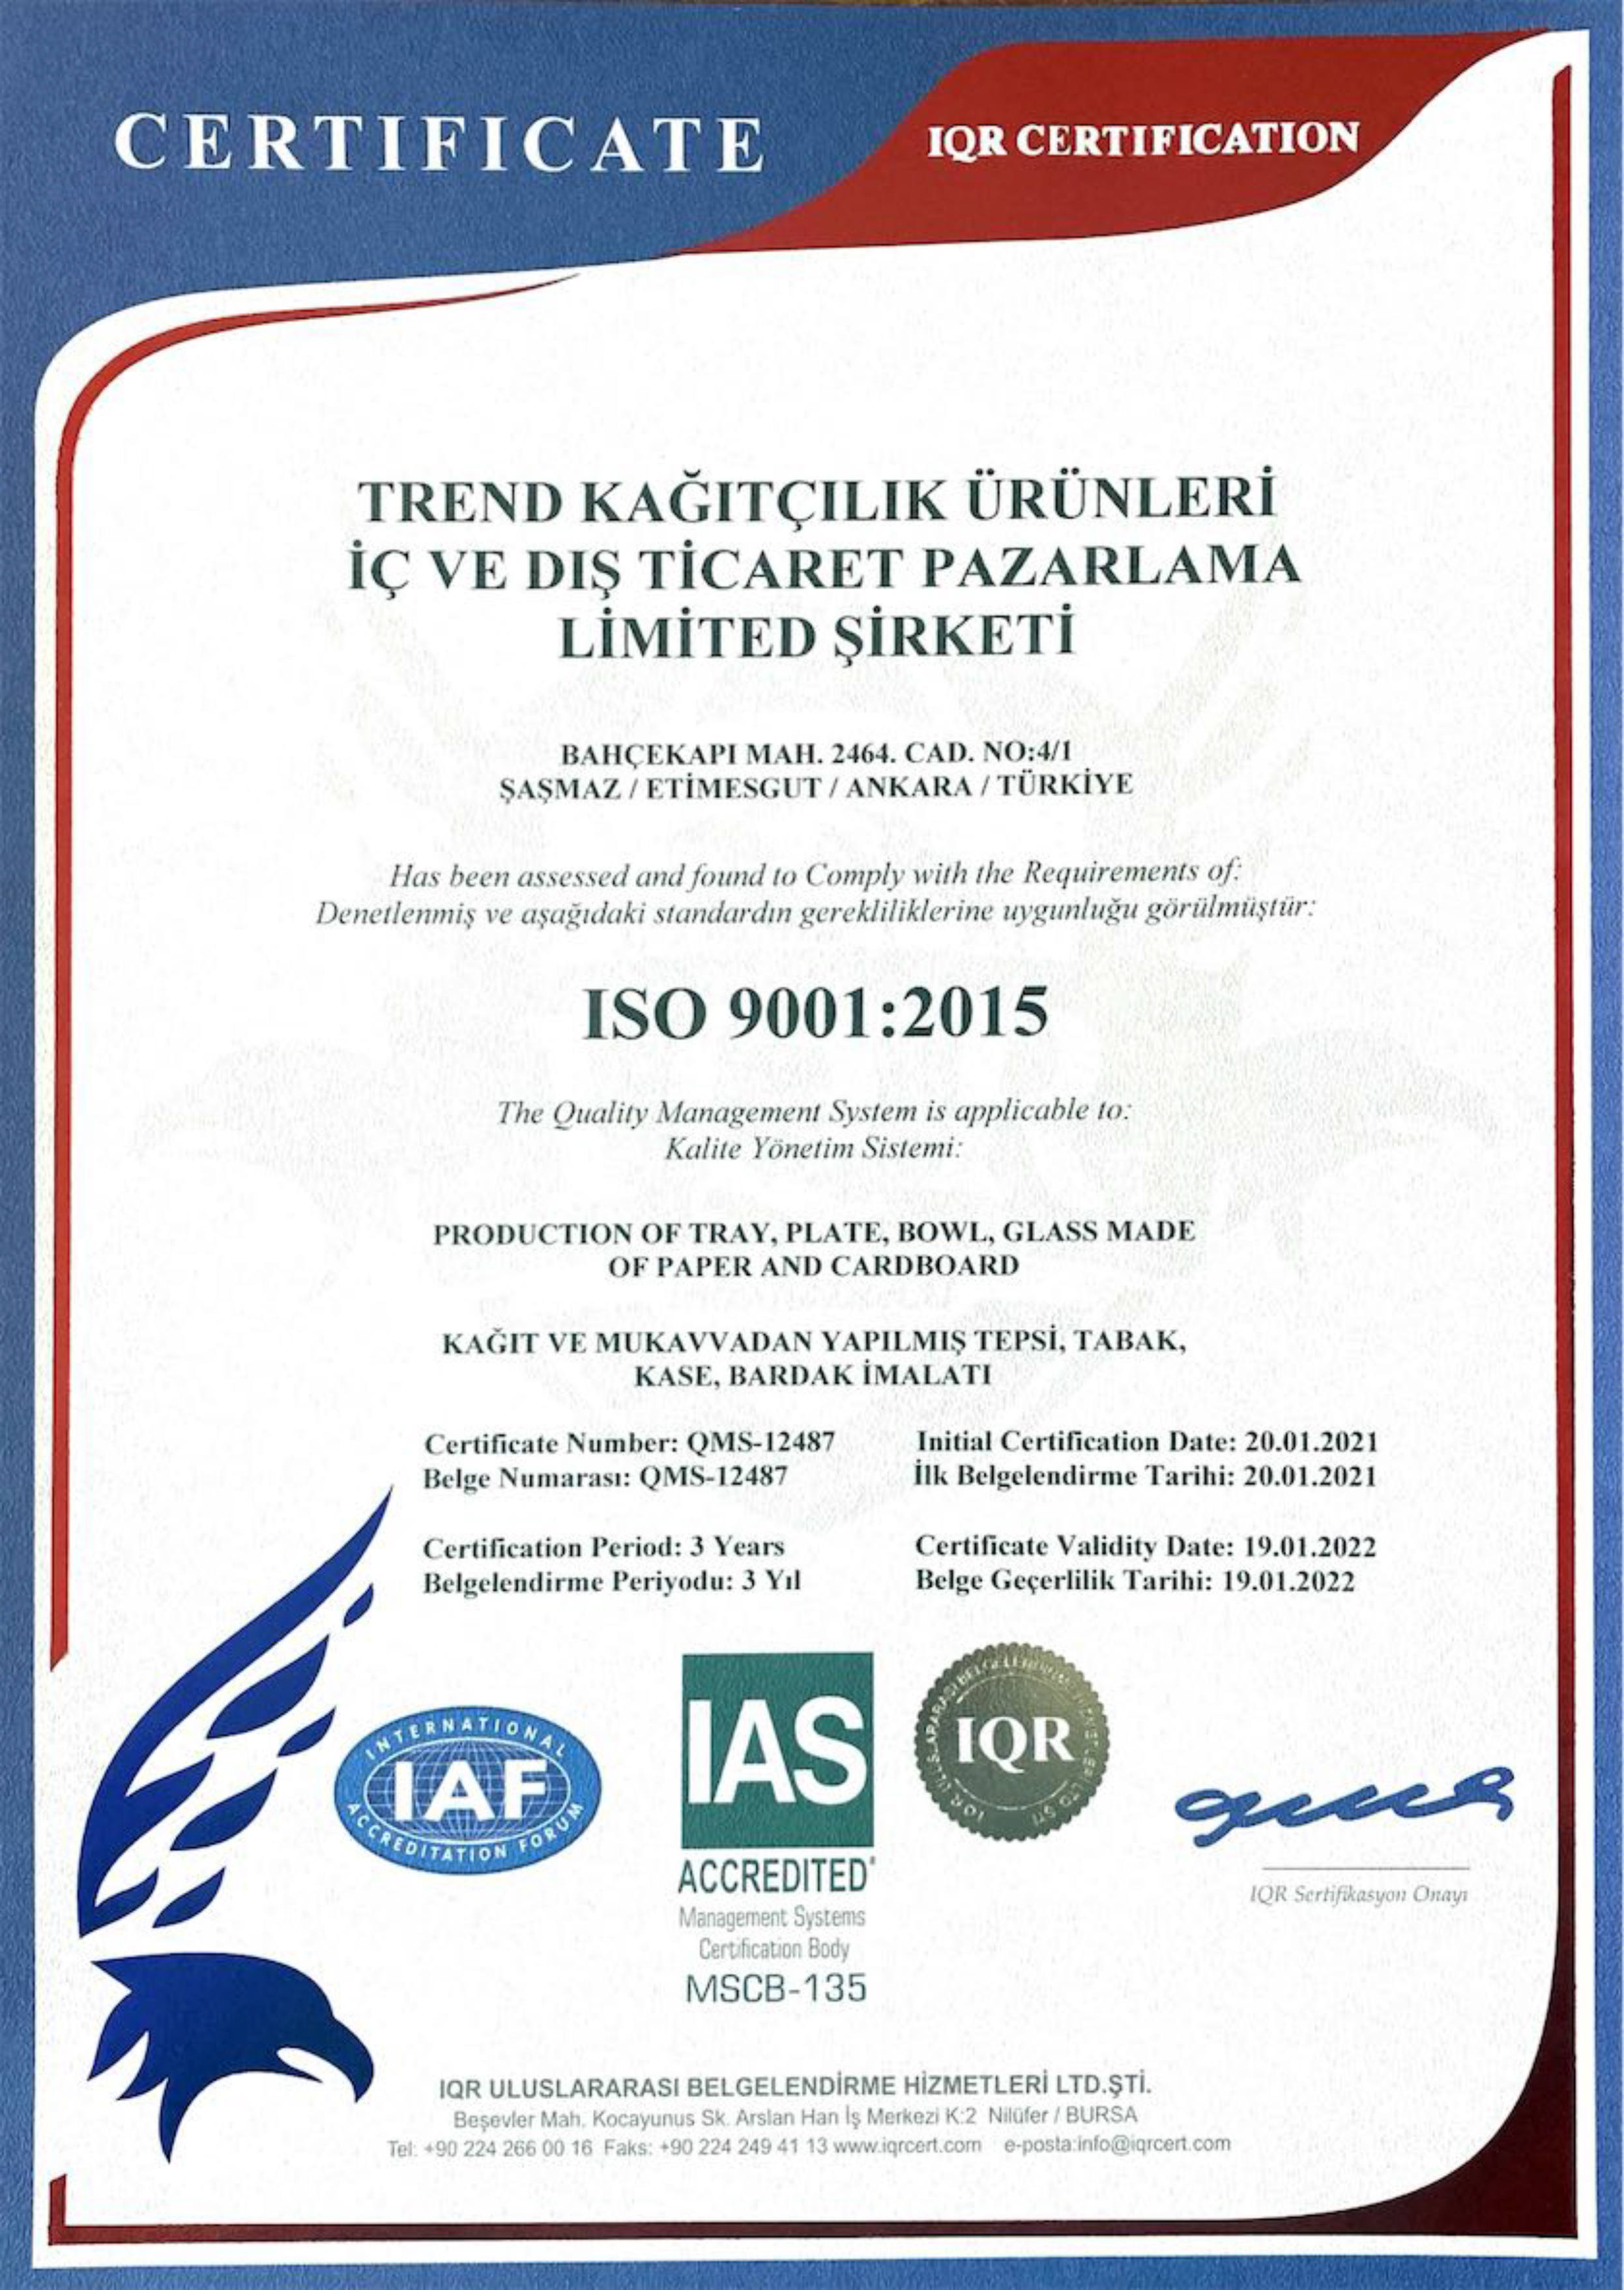 Trend Kağıtçılık ISO 9001